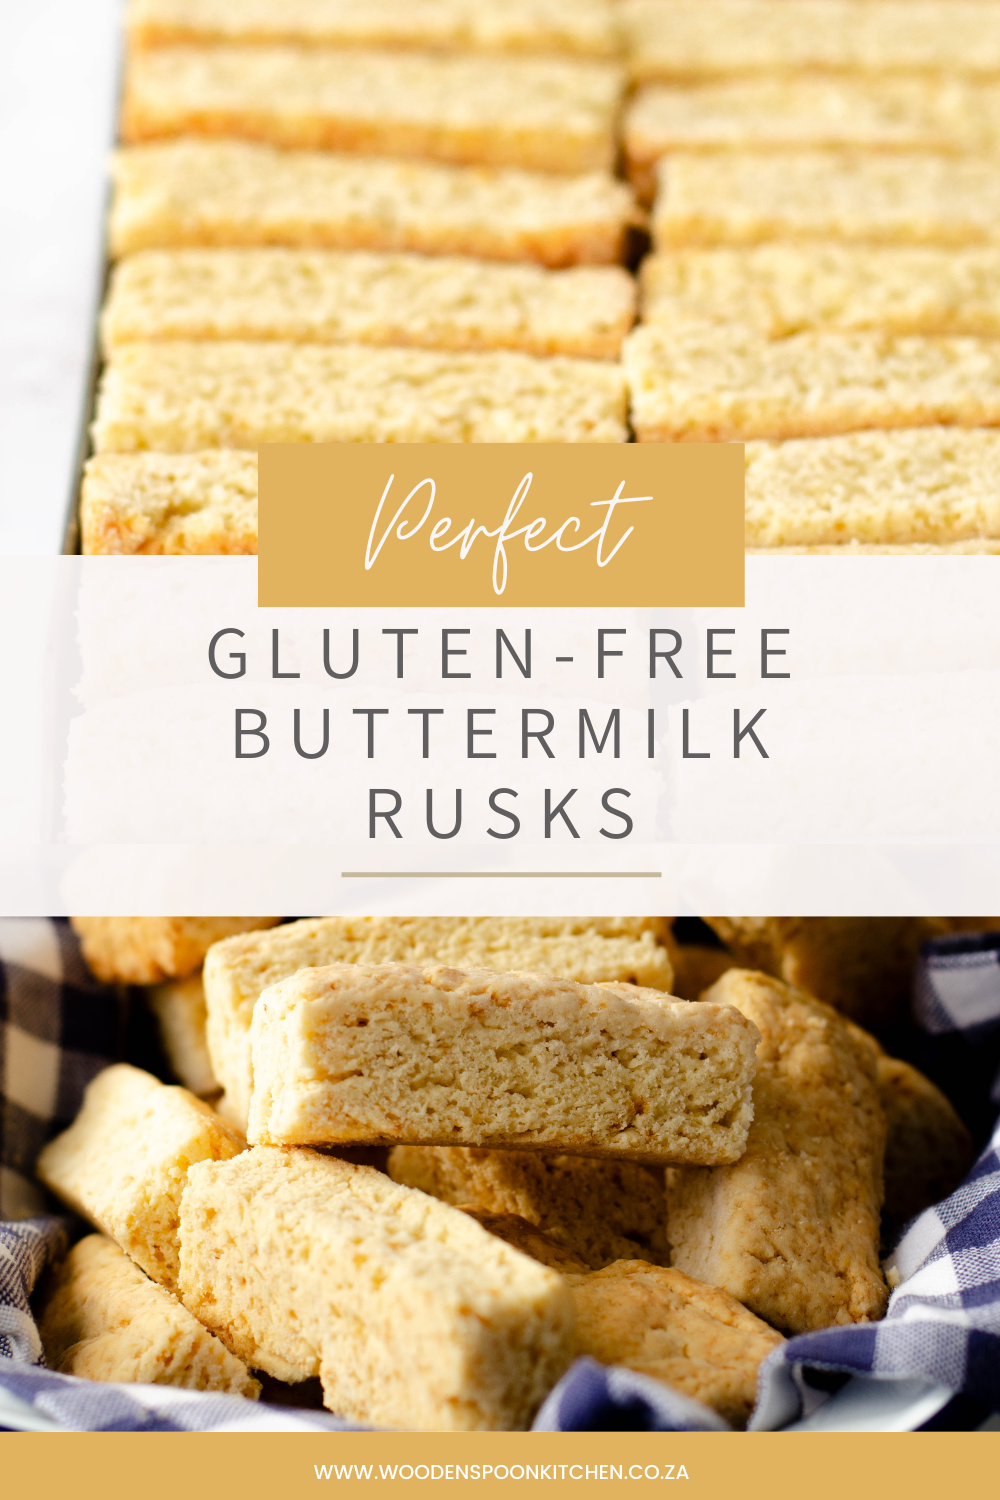 Gluten-free Buttermilk rusks